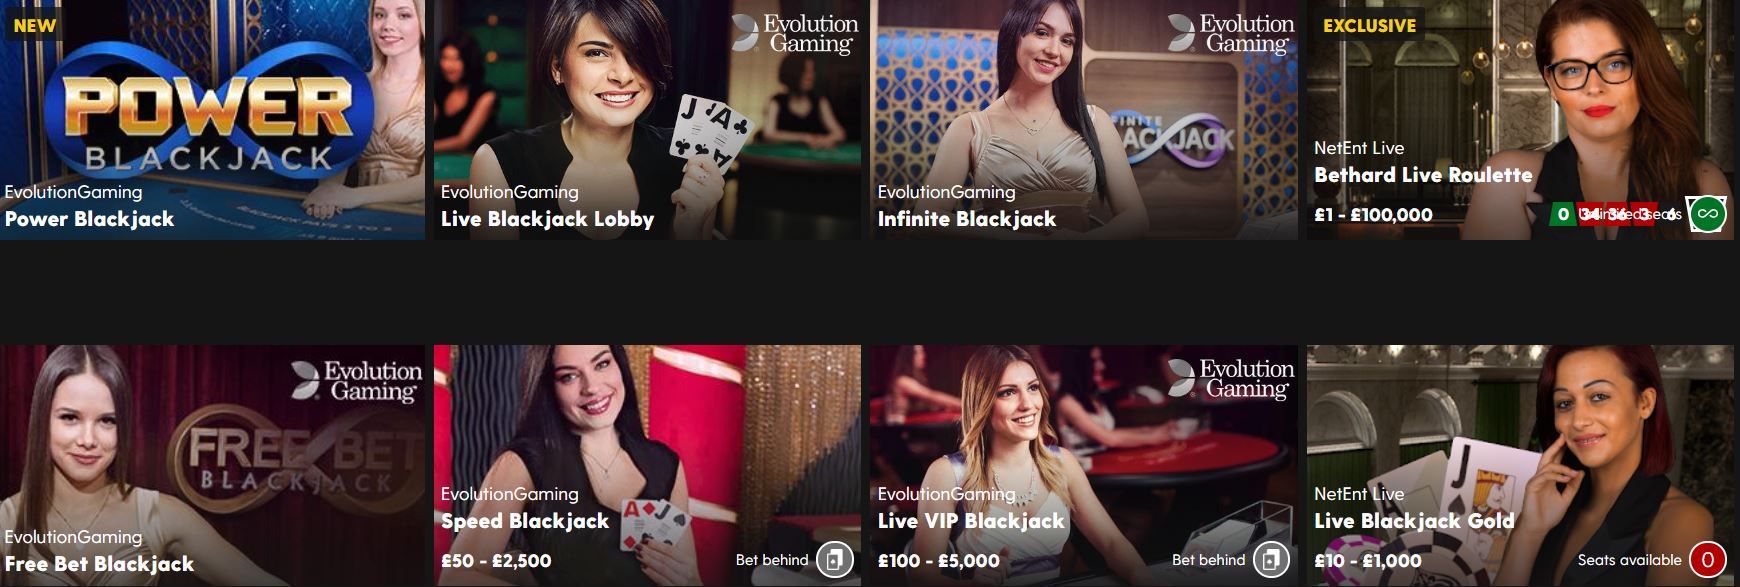 Online casinos offer several blackjack rooms.